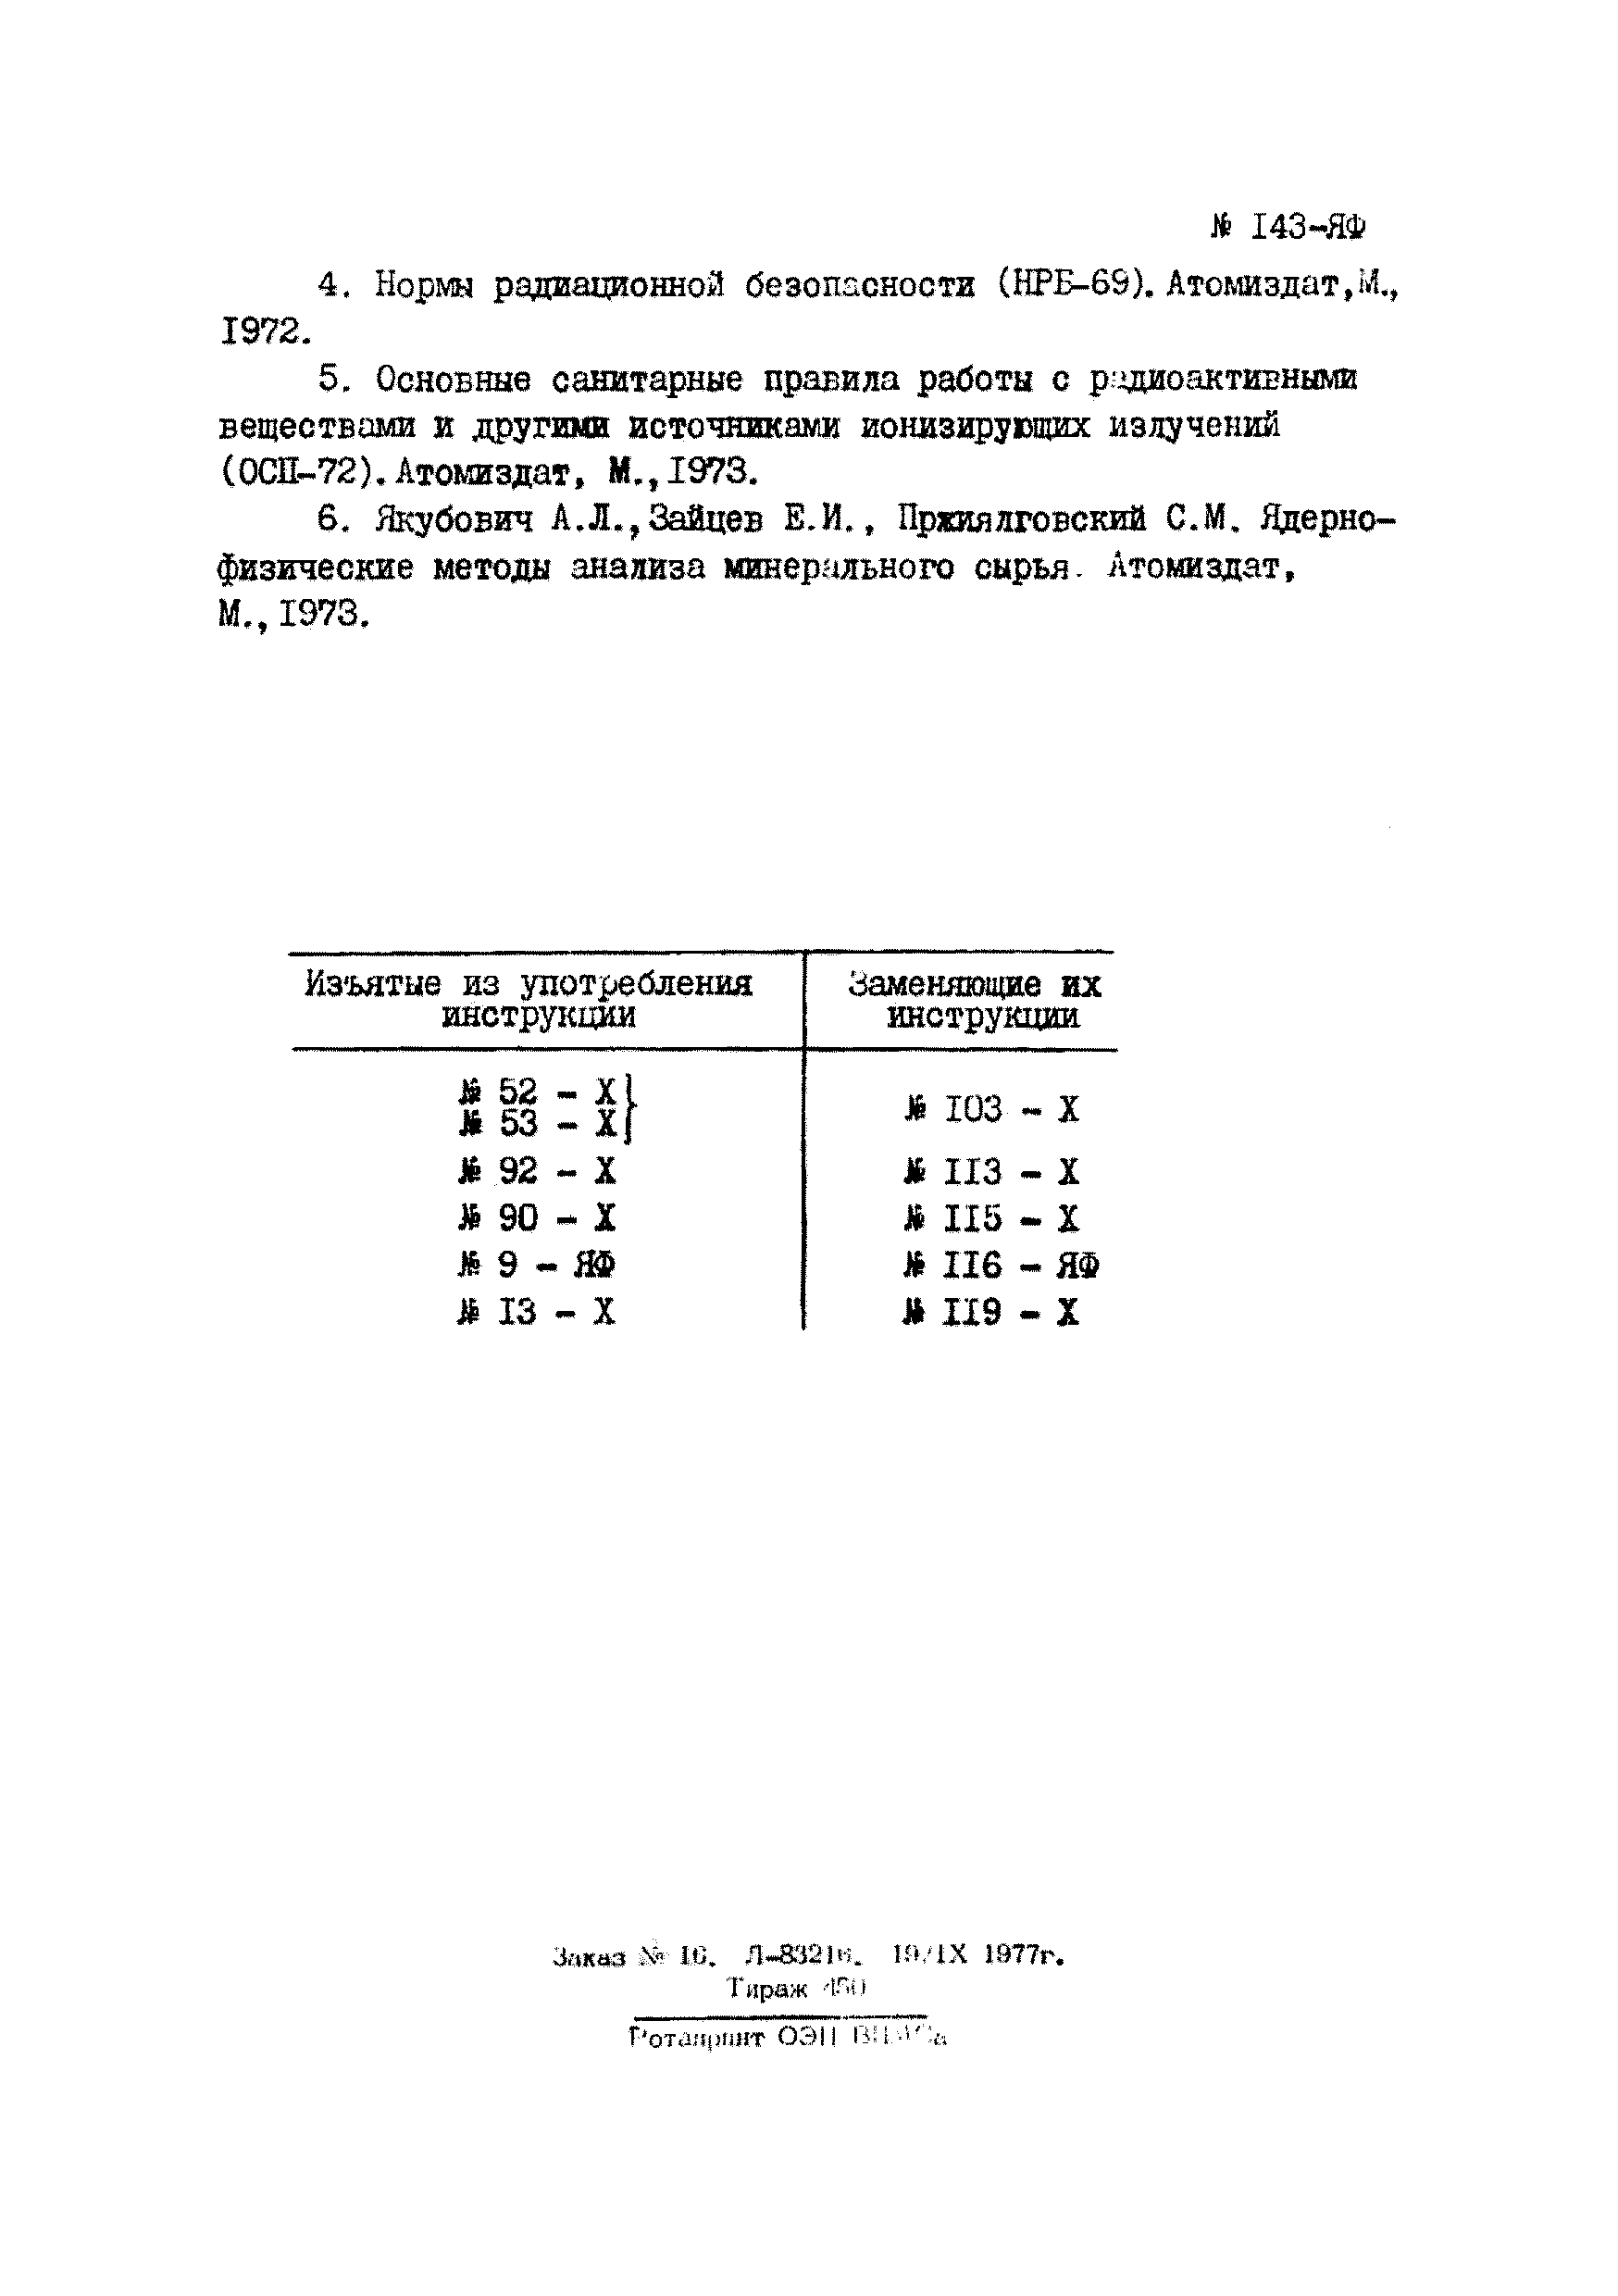 Инструкция НСАМ 143-ЯФ